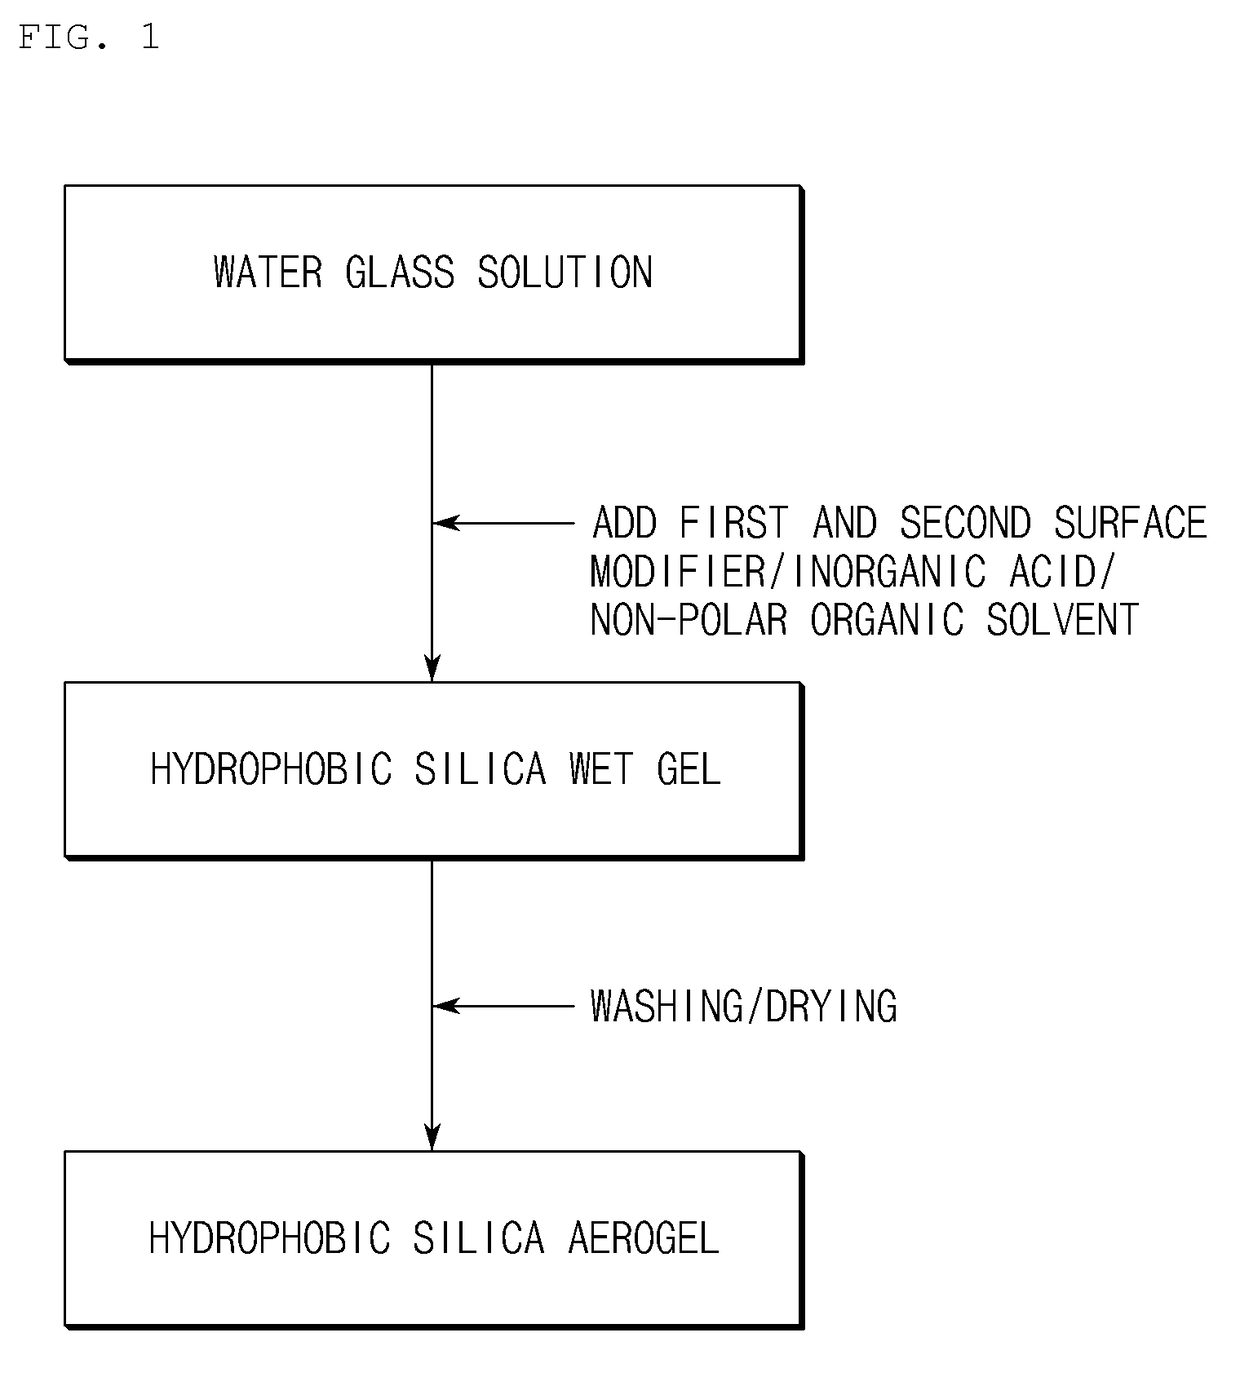 Method for preparing hydrophobic silica aerogel